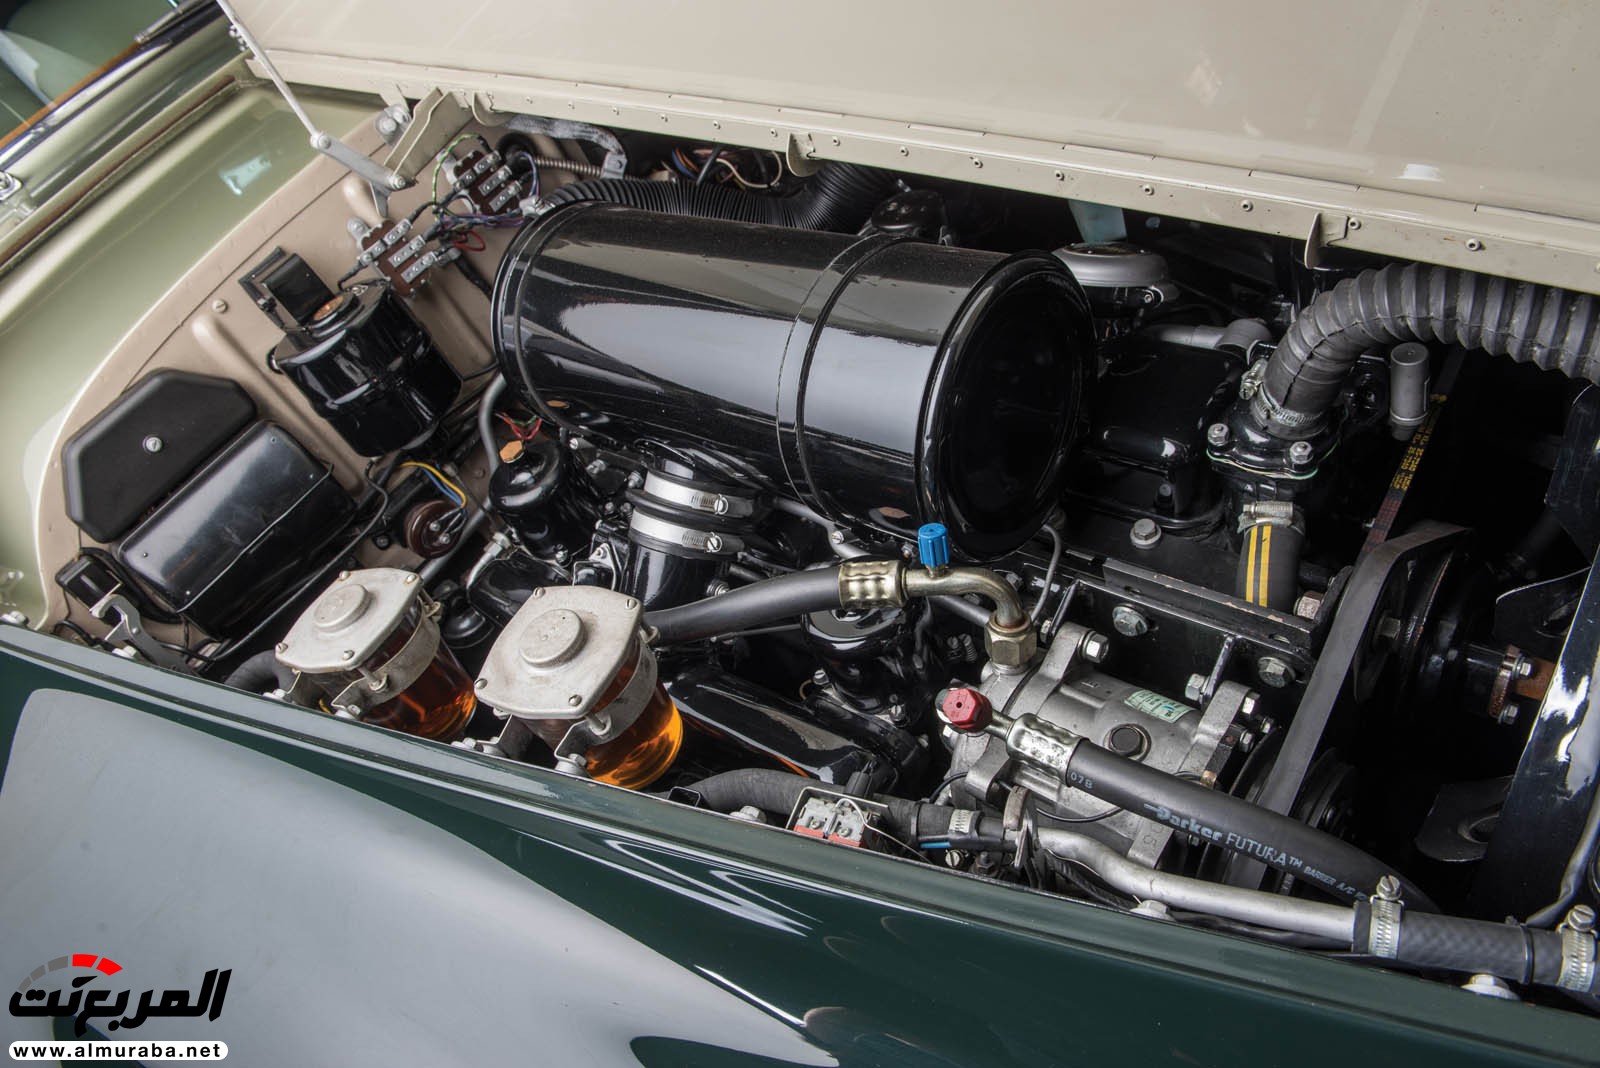 "رولز رويس" سيلفر كلاود 1959 ذات هيكلة الواجن تتوجه لتباع في مزاد عالمي Rolls-Royce Silver Cloud 88